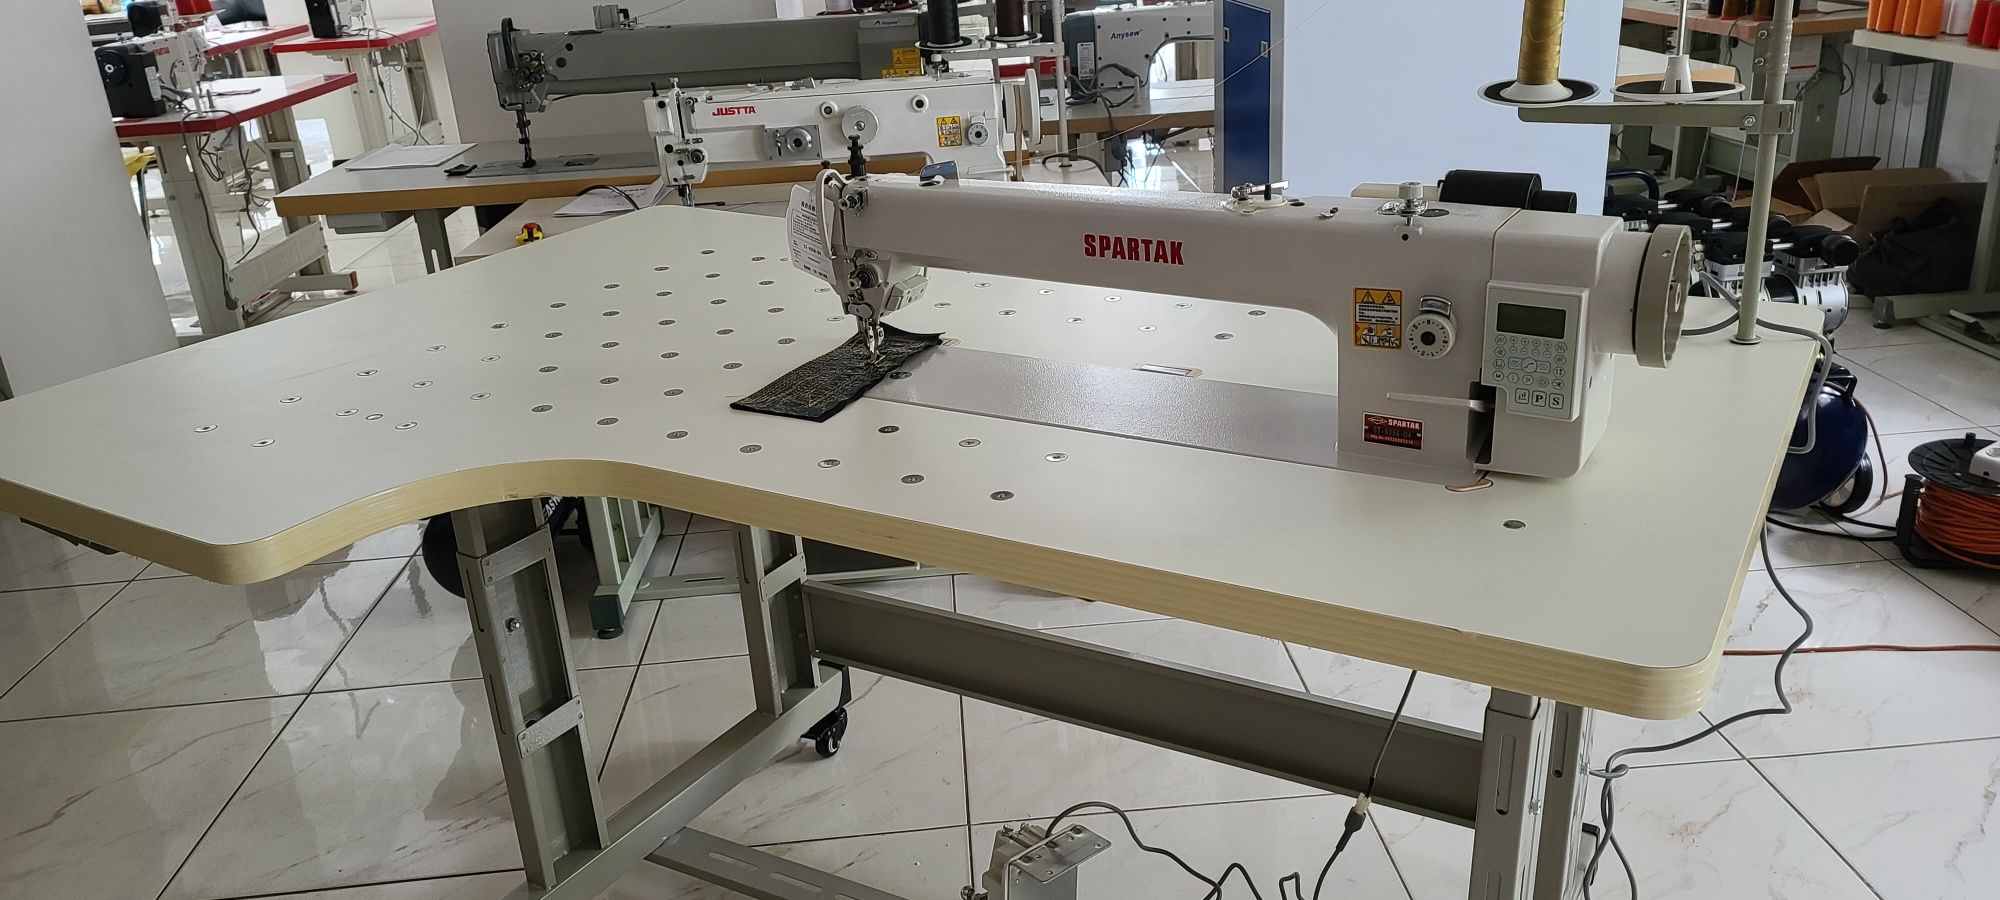 Промышленная прямострочная швейная машина с увеличенной платформой